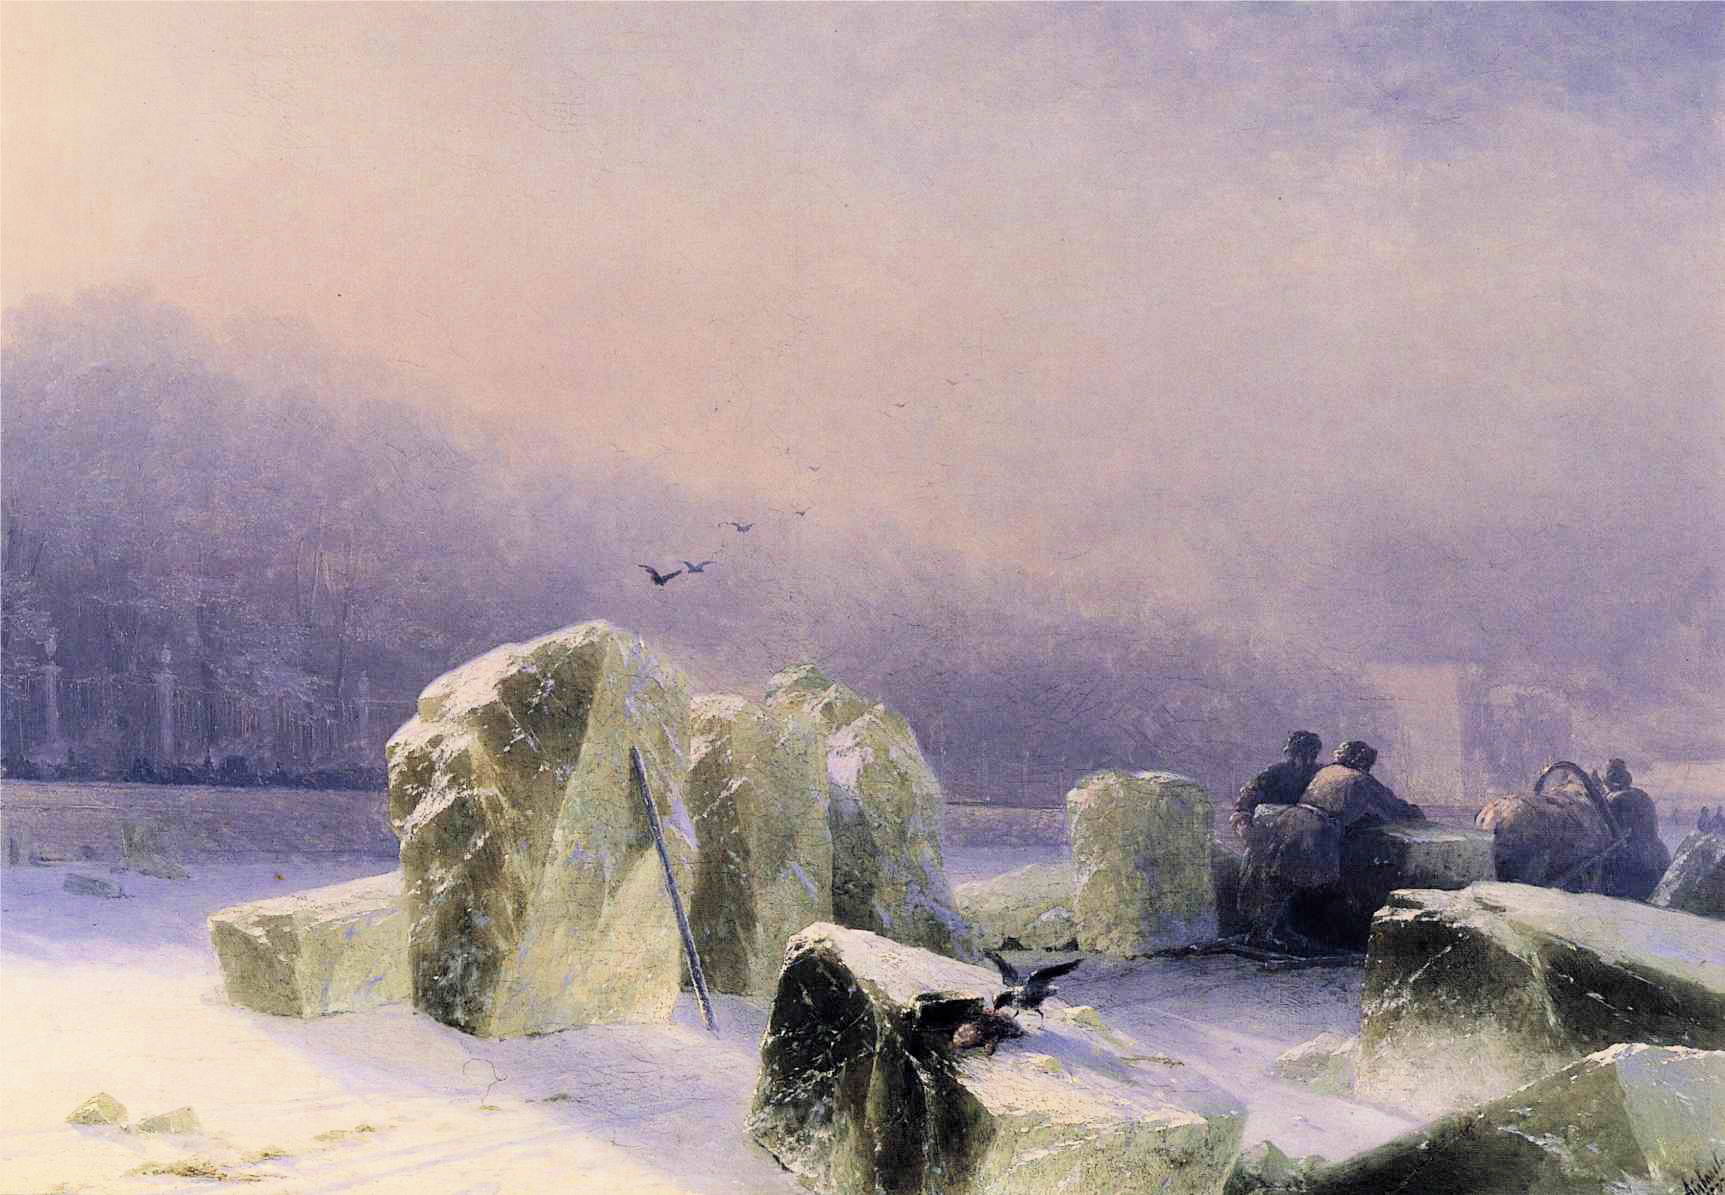 Ice Breakers on the Frozen Neva in St. Petersburg (1877).